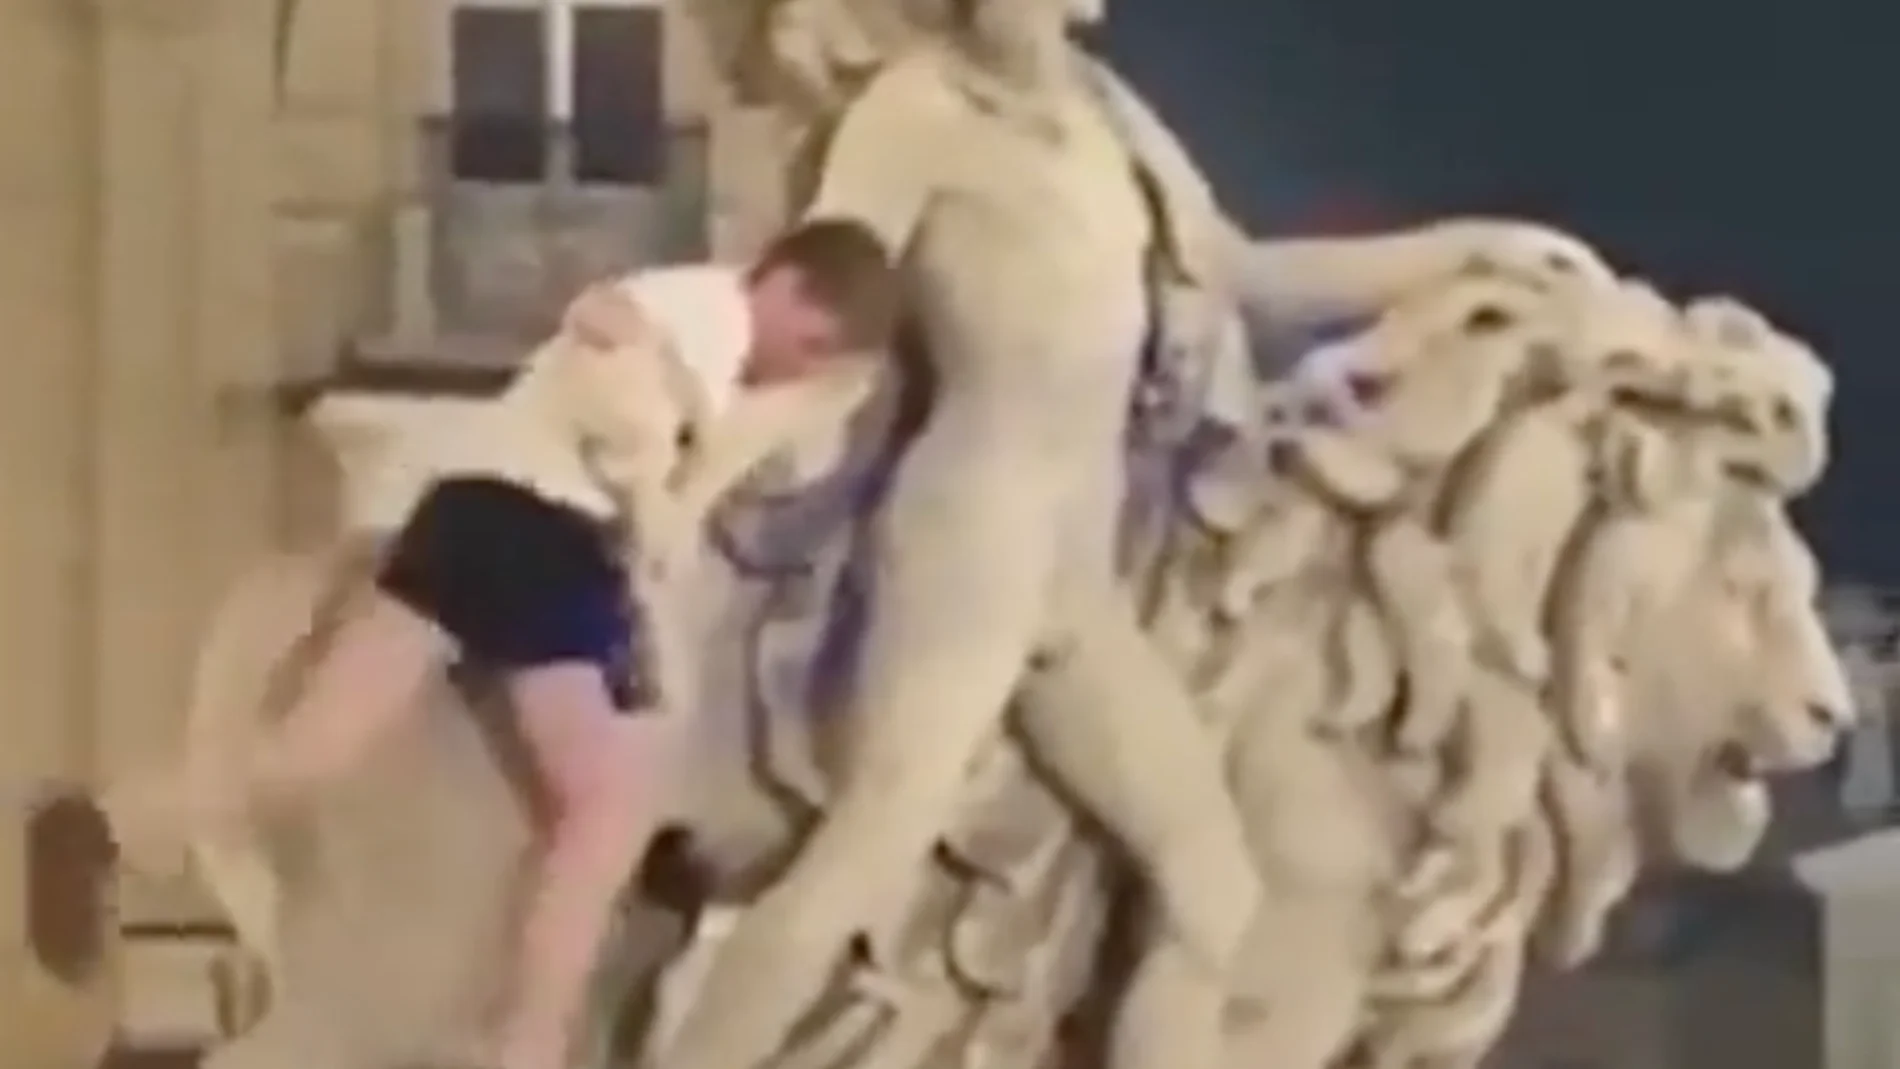 Turista Irlandés aparentemente ebrio escala estatua en Bruselas y causa daños por $19,000 un día después de su reapertura al público